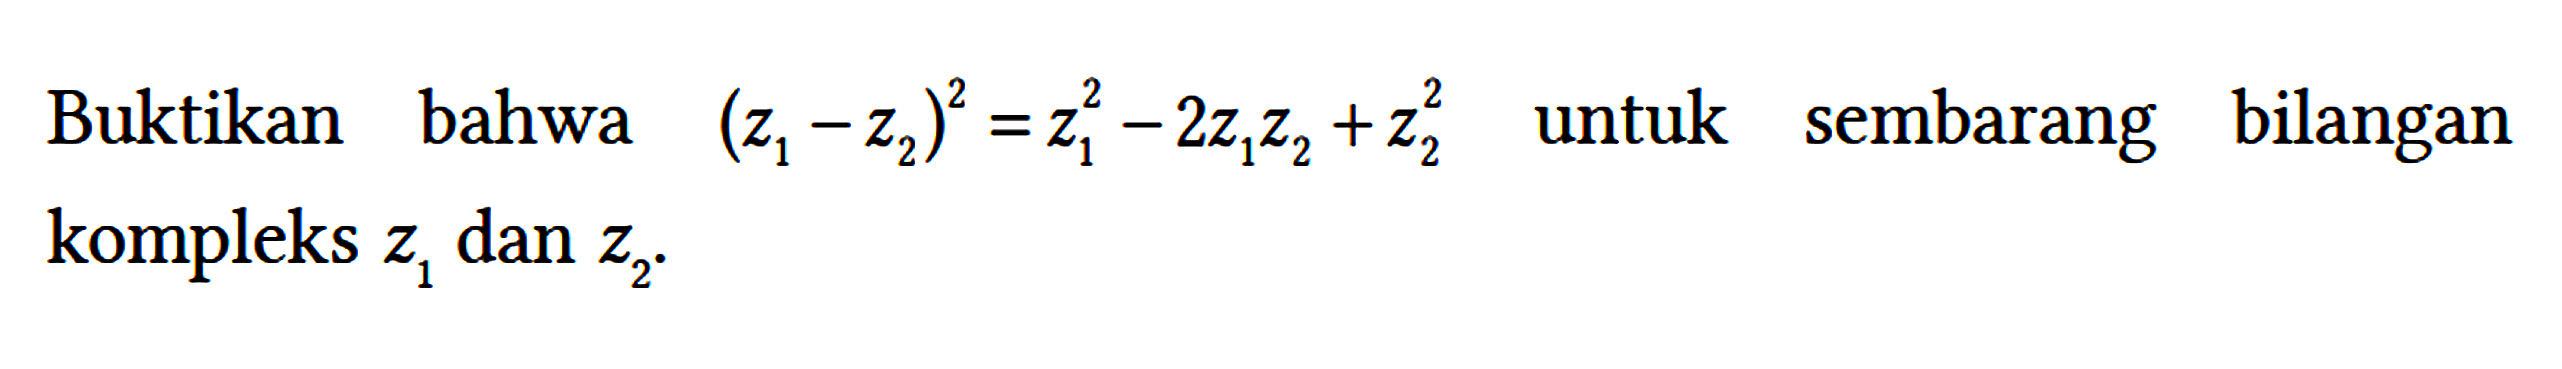 Buktikan bahwa (z1 - z2)^2 = z1^2 - 2 z1 z2 + z2^2 untuk sembarang bilangan kompleks z1 dan z2.